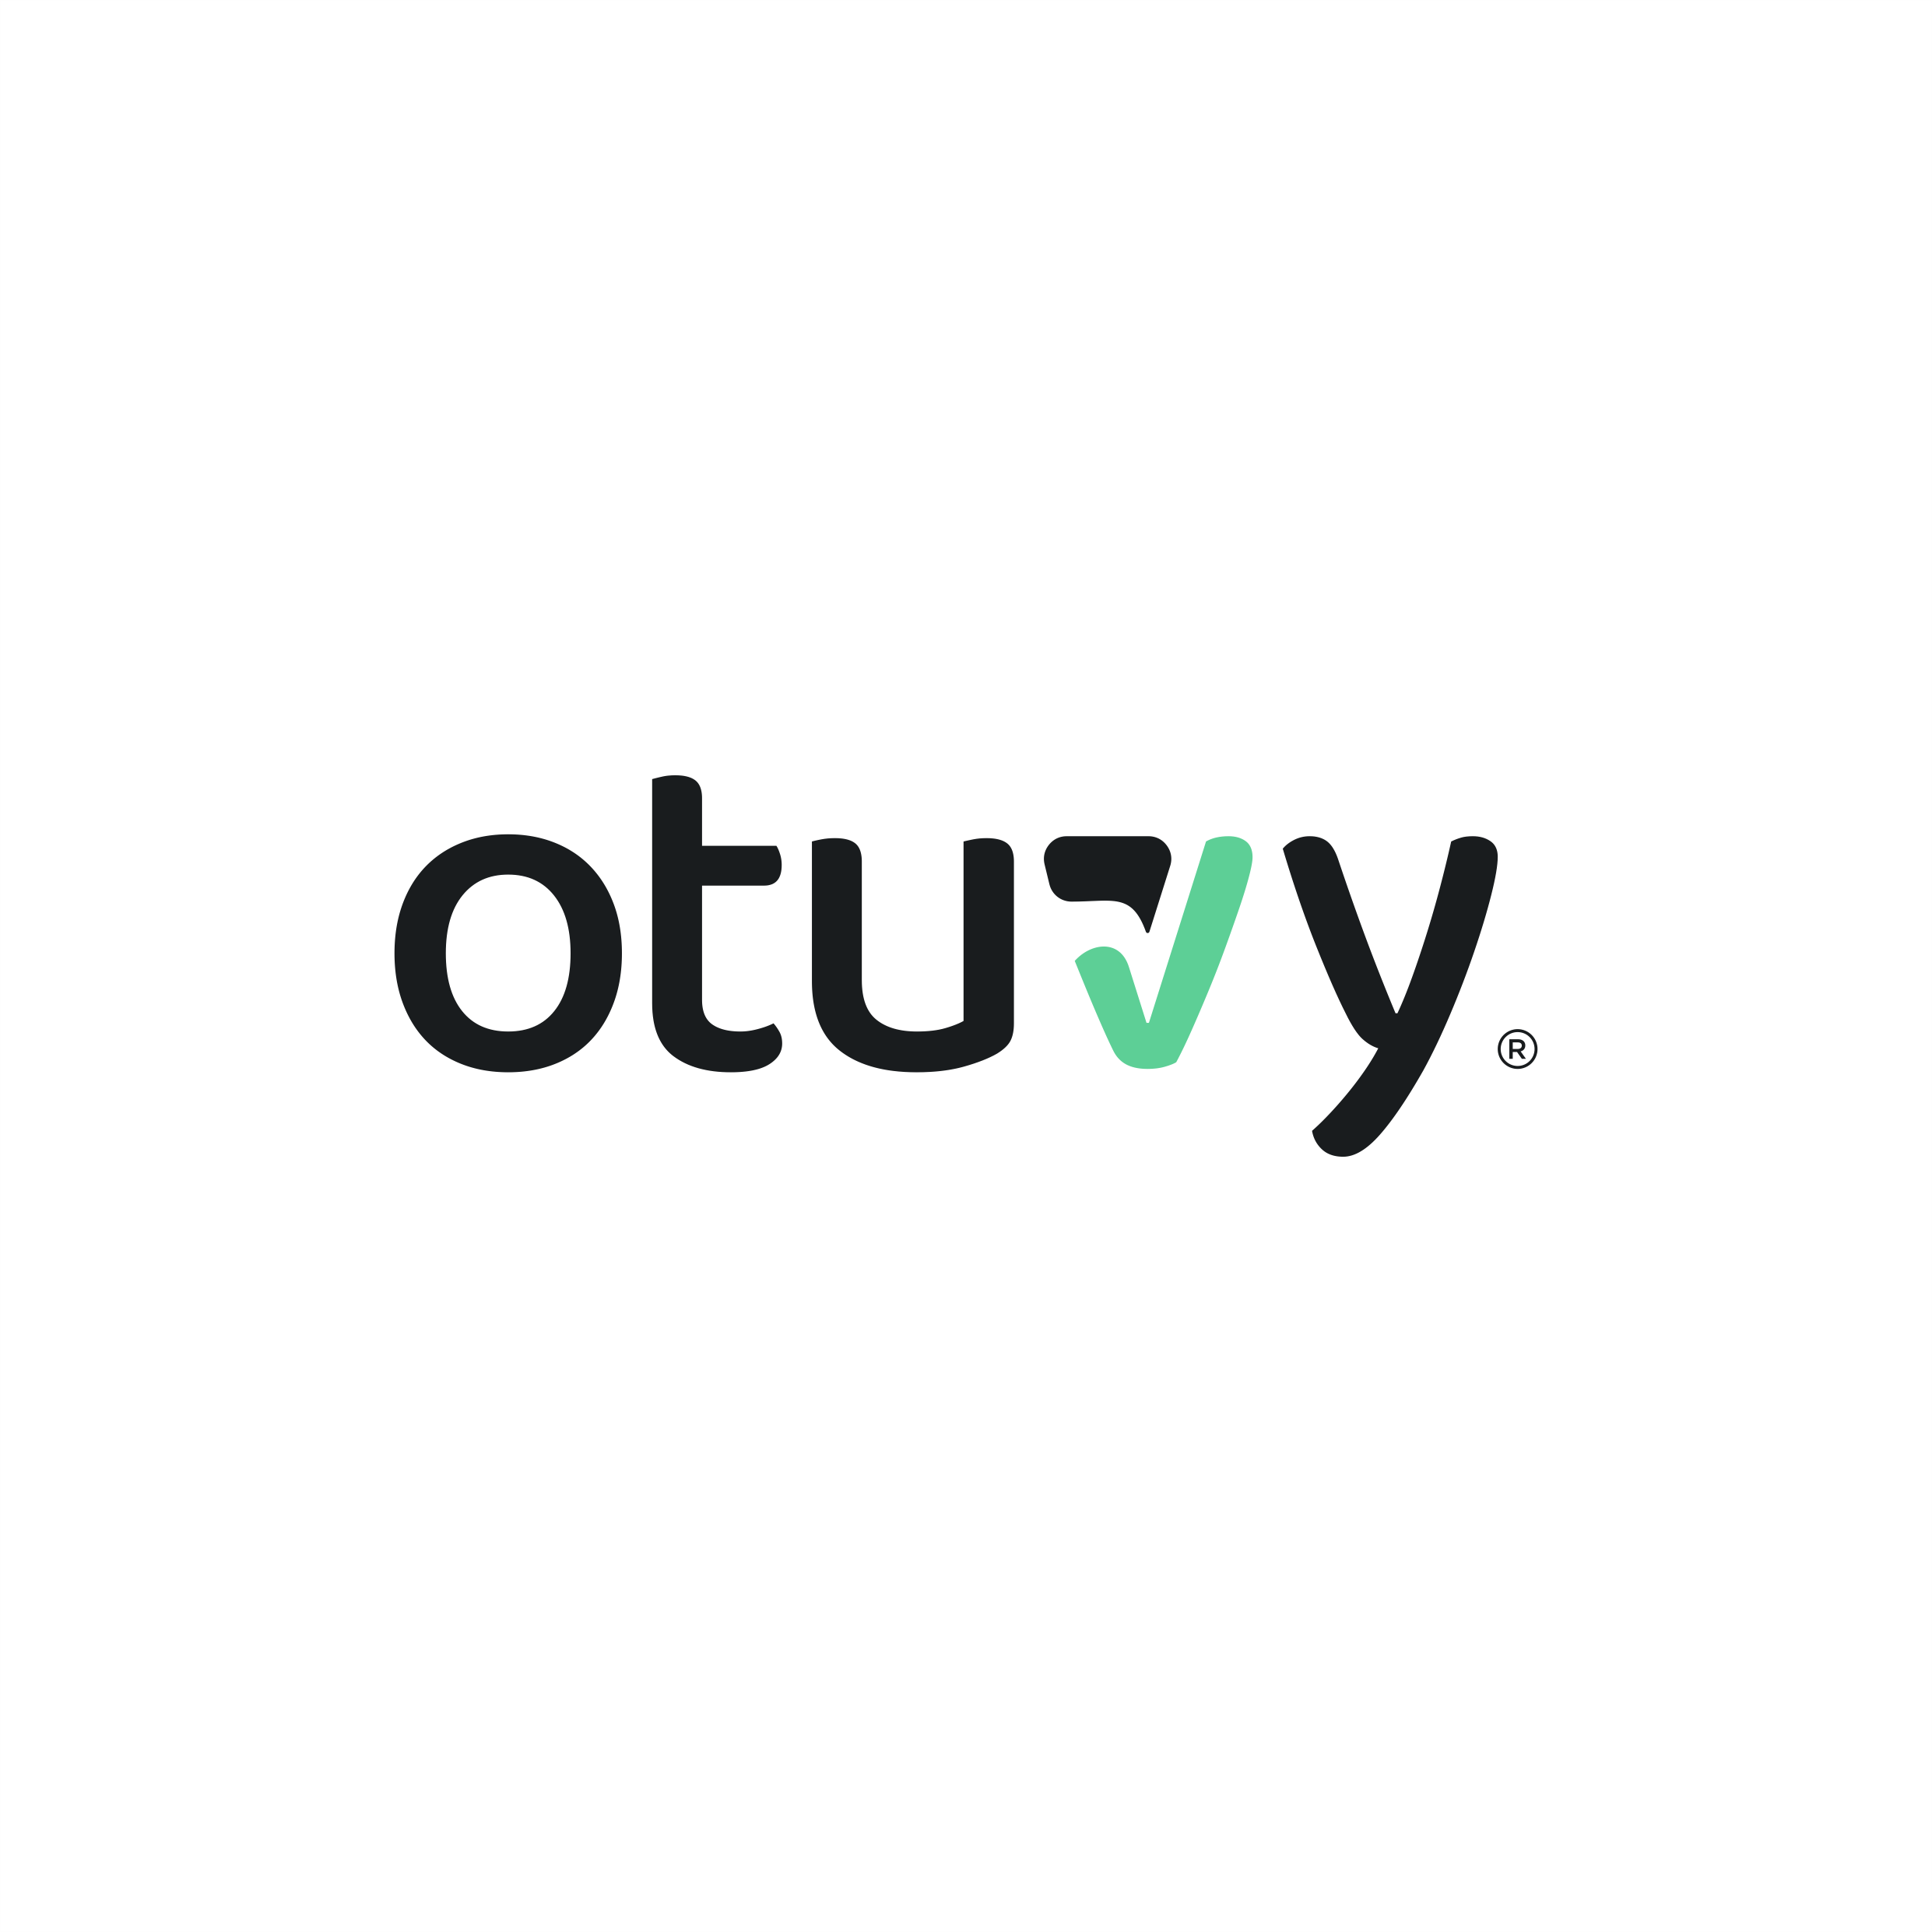 Otuvy logo